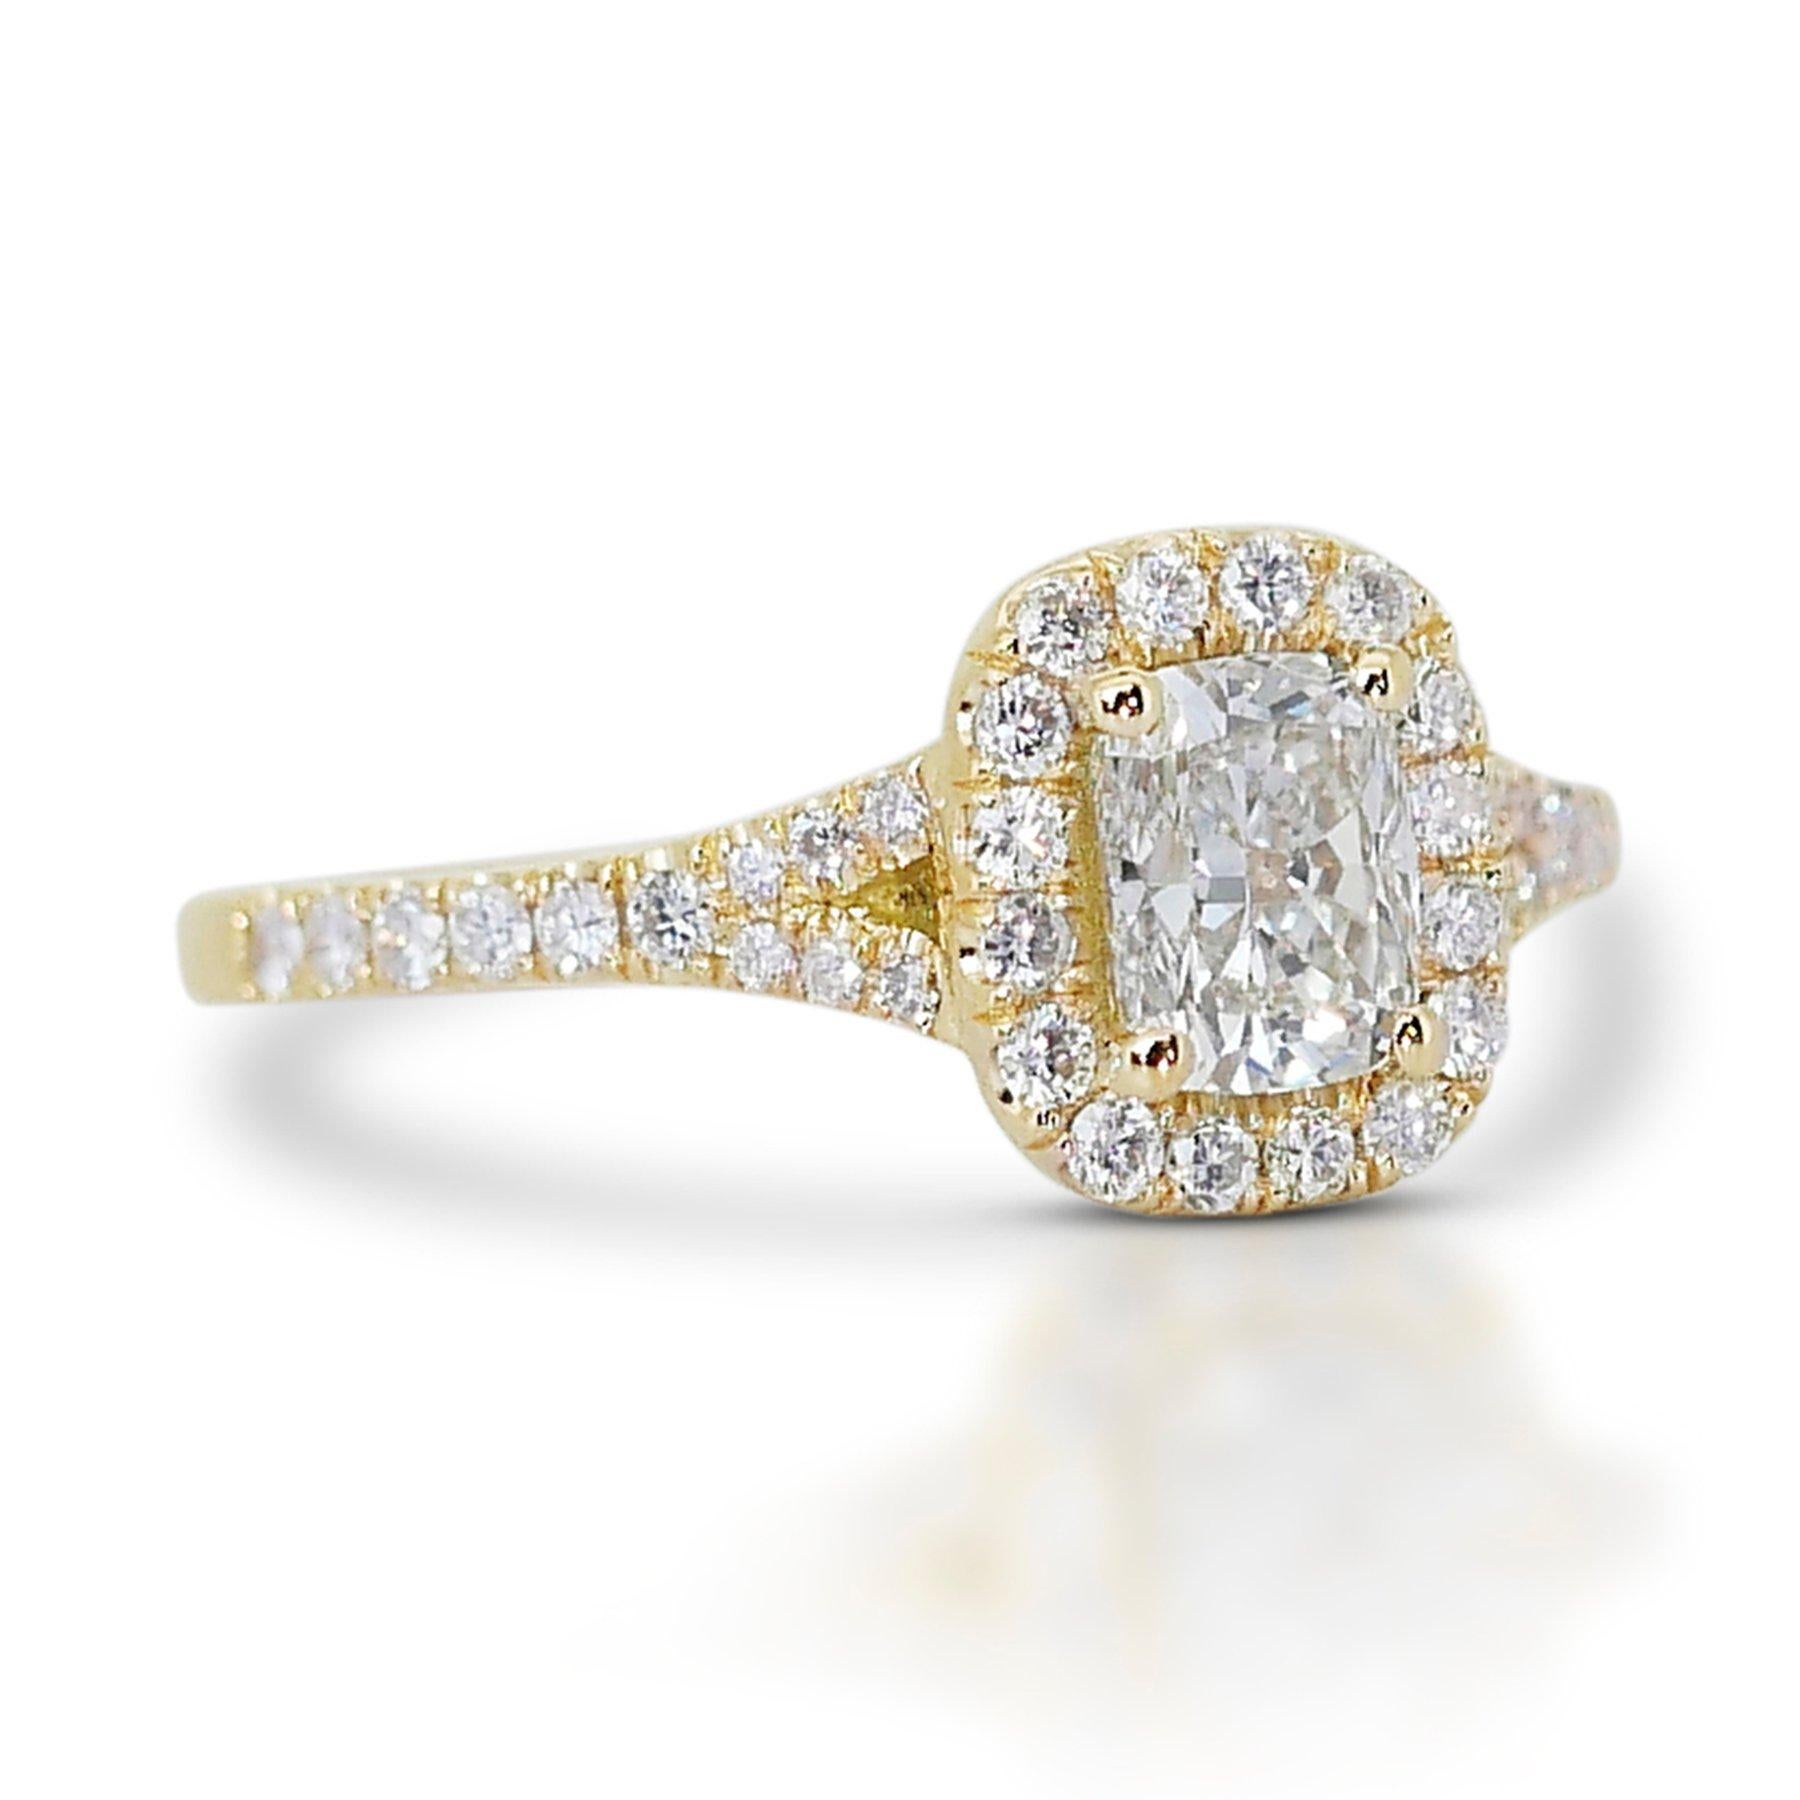 Brilliante 1.33ct Diamond Halo Ring in 18k Yellow Gold - GIA Certified

Cette exquise bague en or jaune 18 carats est un exemple de luxe avec son diamant principal de 1,00 carat de taille coussin. Pour rehausser la pièce maîtresse, 40 diamants ronds